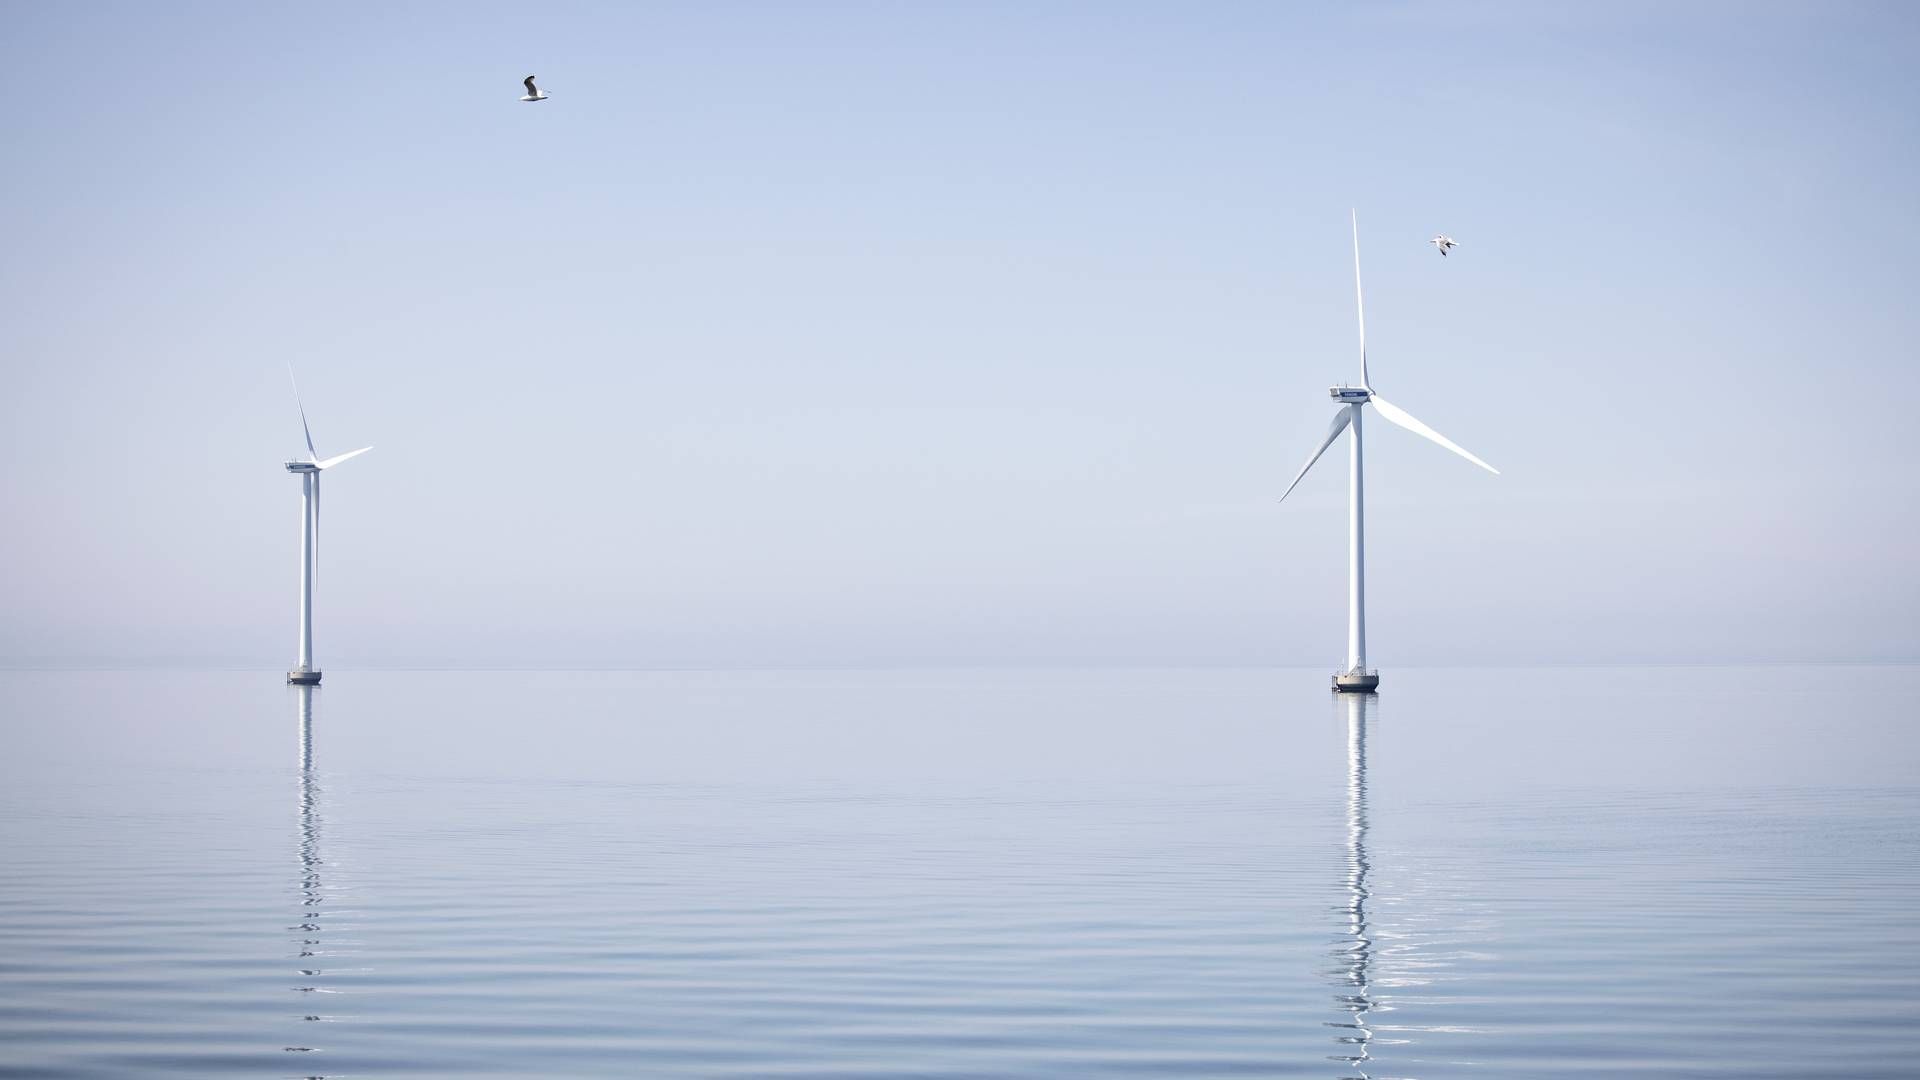 De kystnære havmøller ved Sprogø er fortsat European Energys eneste af slagsen. Efter 12 års arbejde opgiver udvikleren nu projekt syd for Skælskør. | Foto: Marius Renner